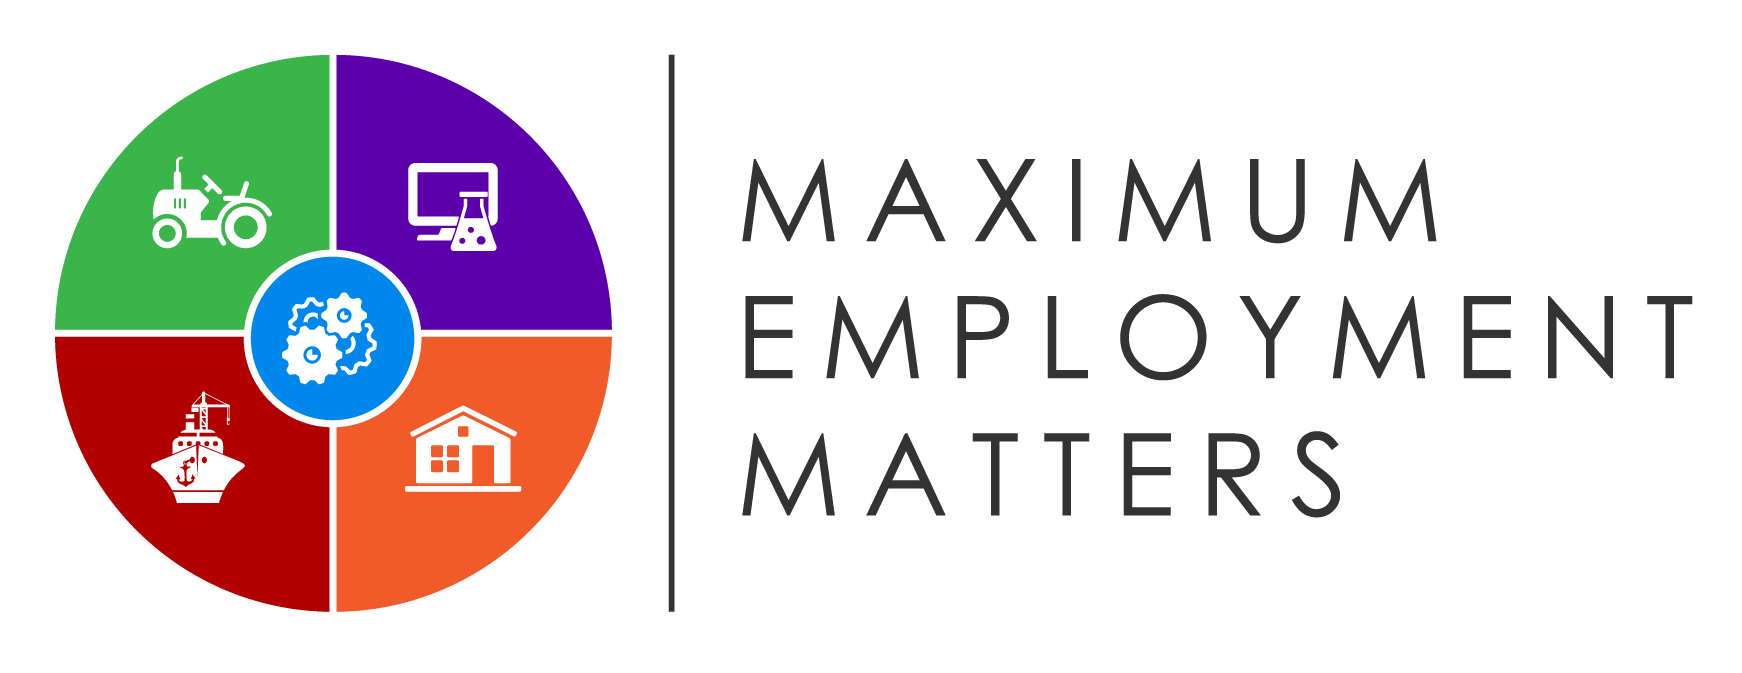 Maximum Employment Matters logo